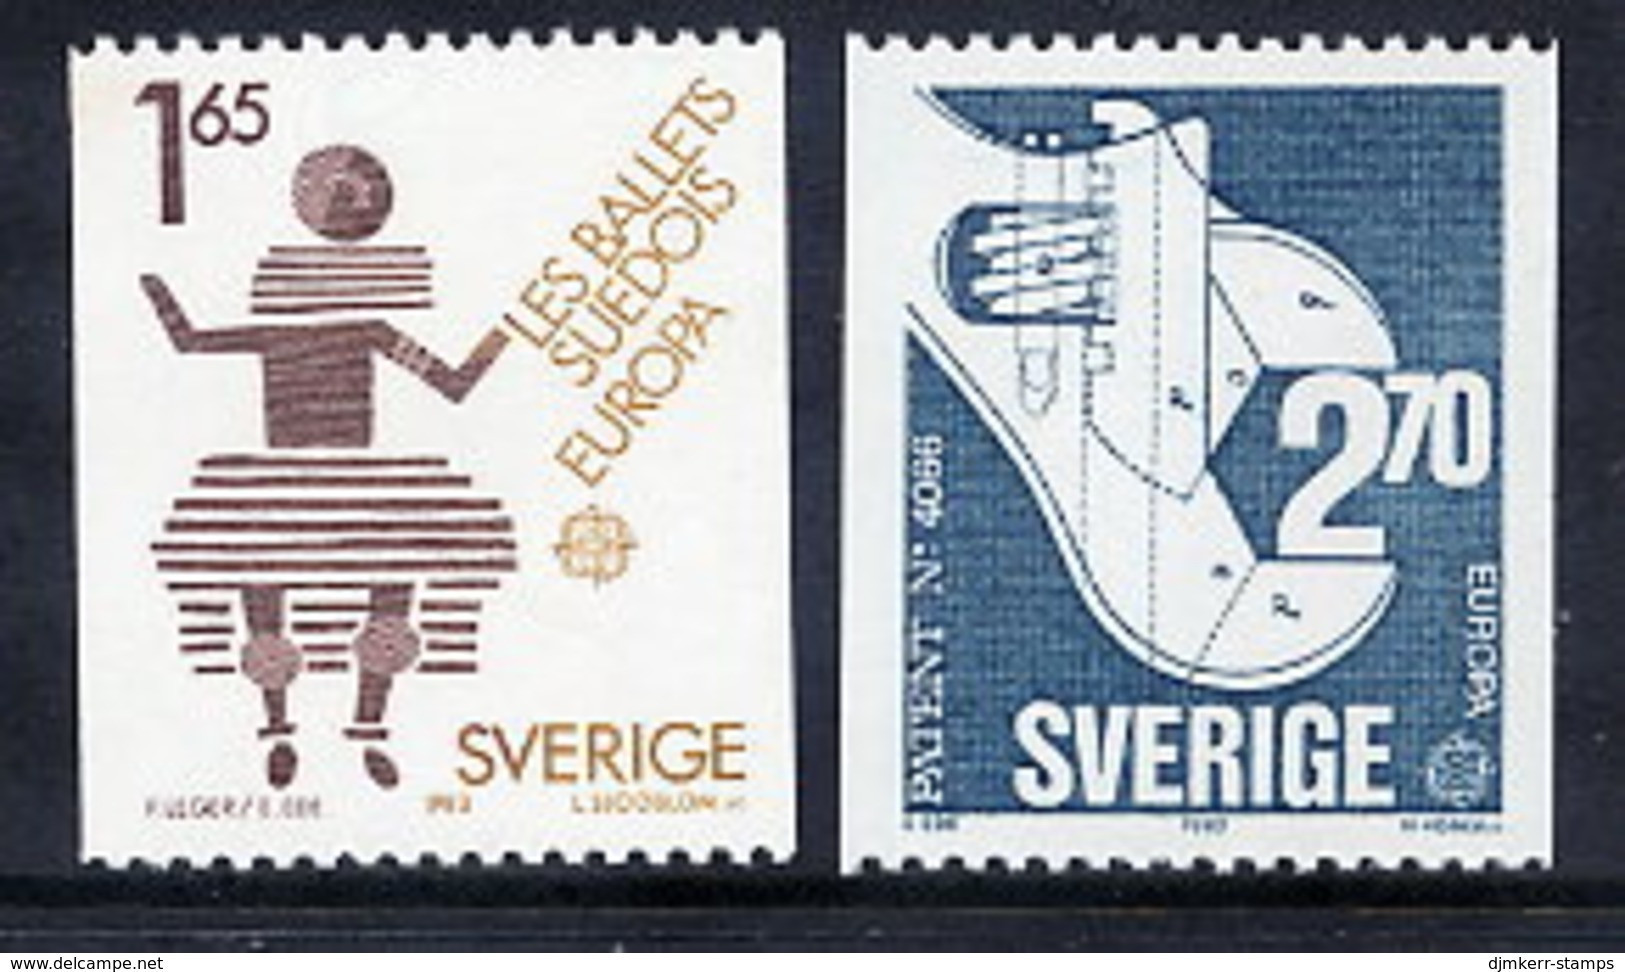 SWEDEN 1983 Europa MNH / **.  Michel 1237-38 - Ungebraucht